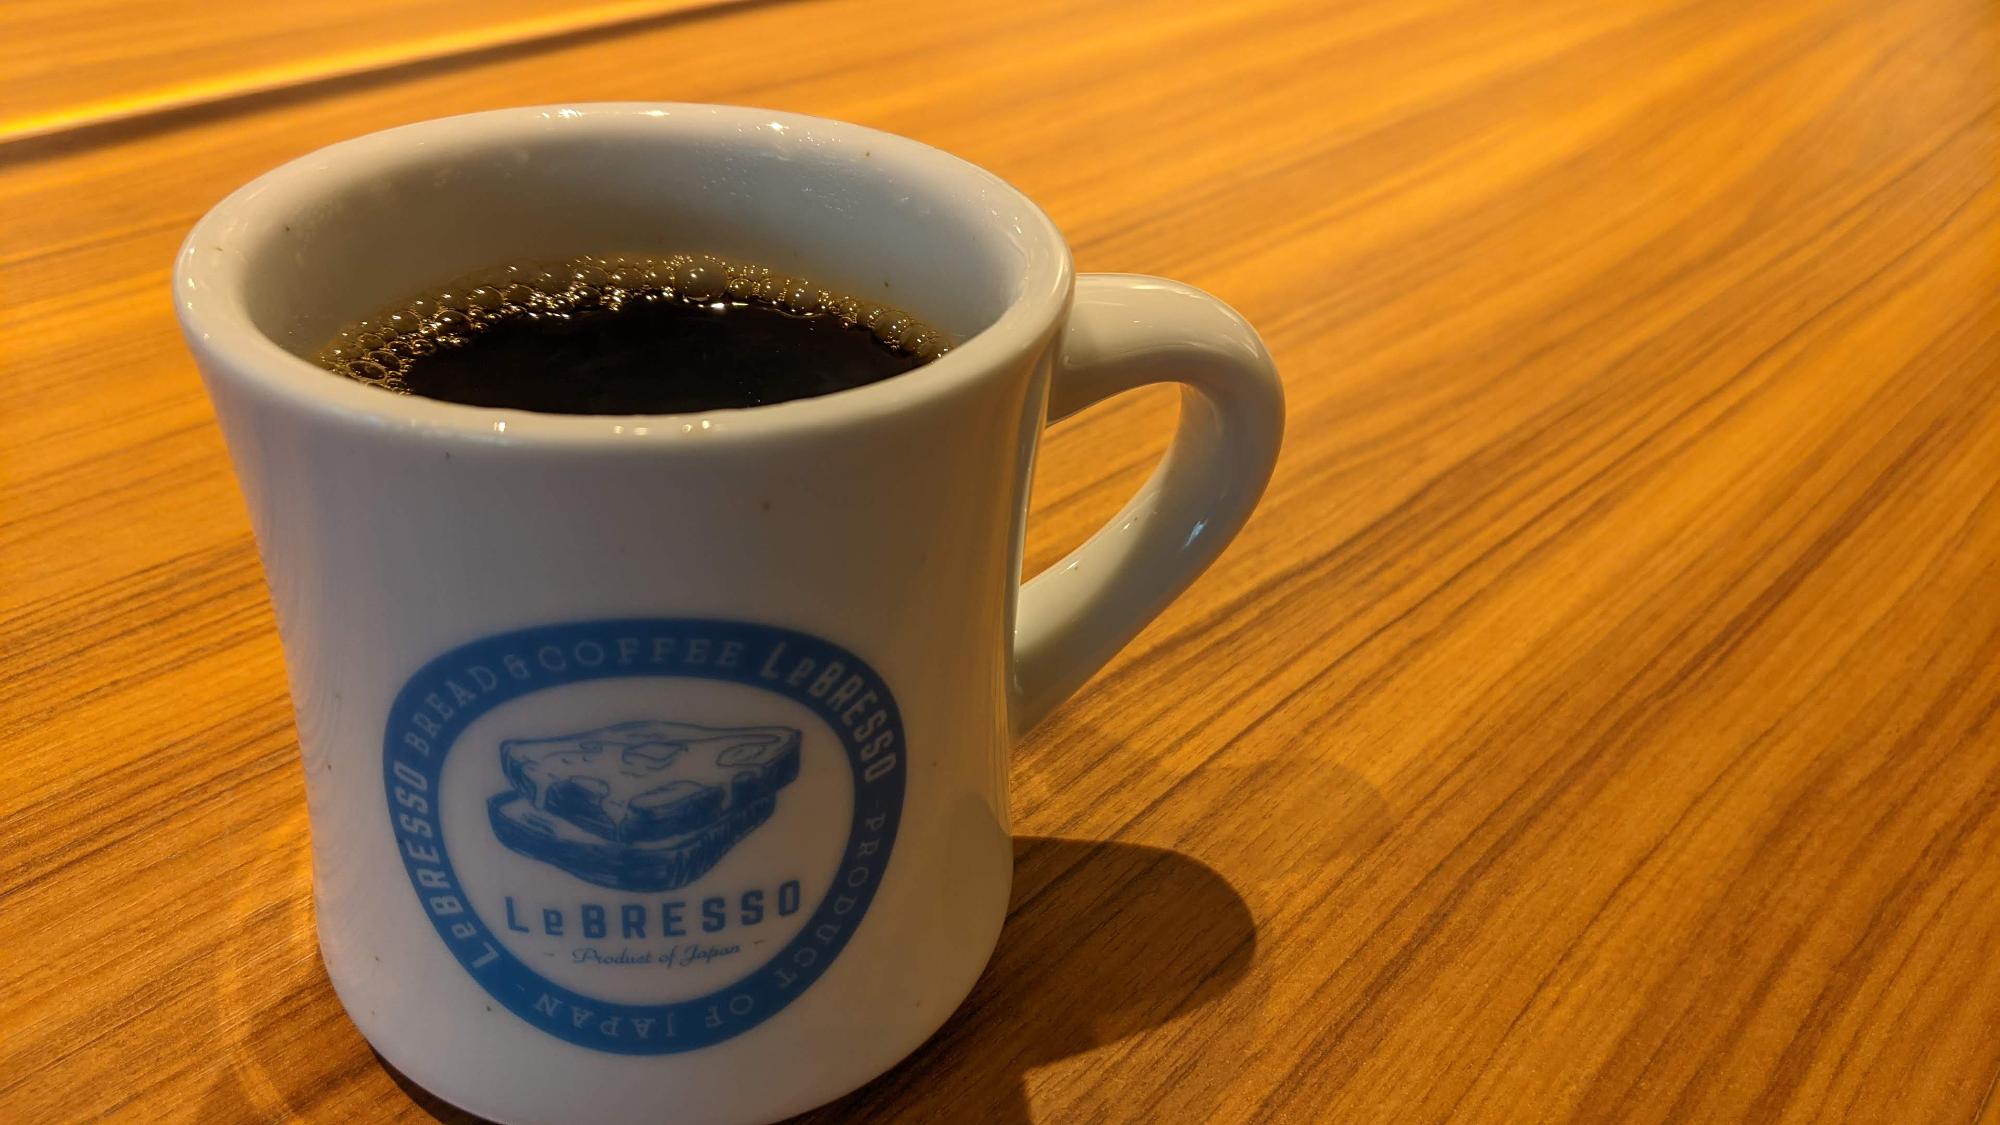 「LeBRESSO（レブレッソ）」の激ウマコーヒーは一度試してみて！